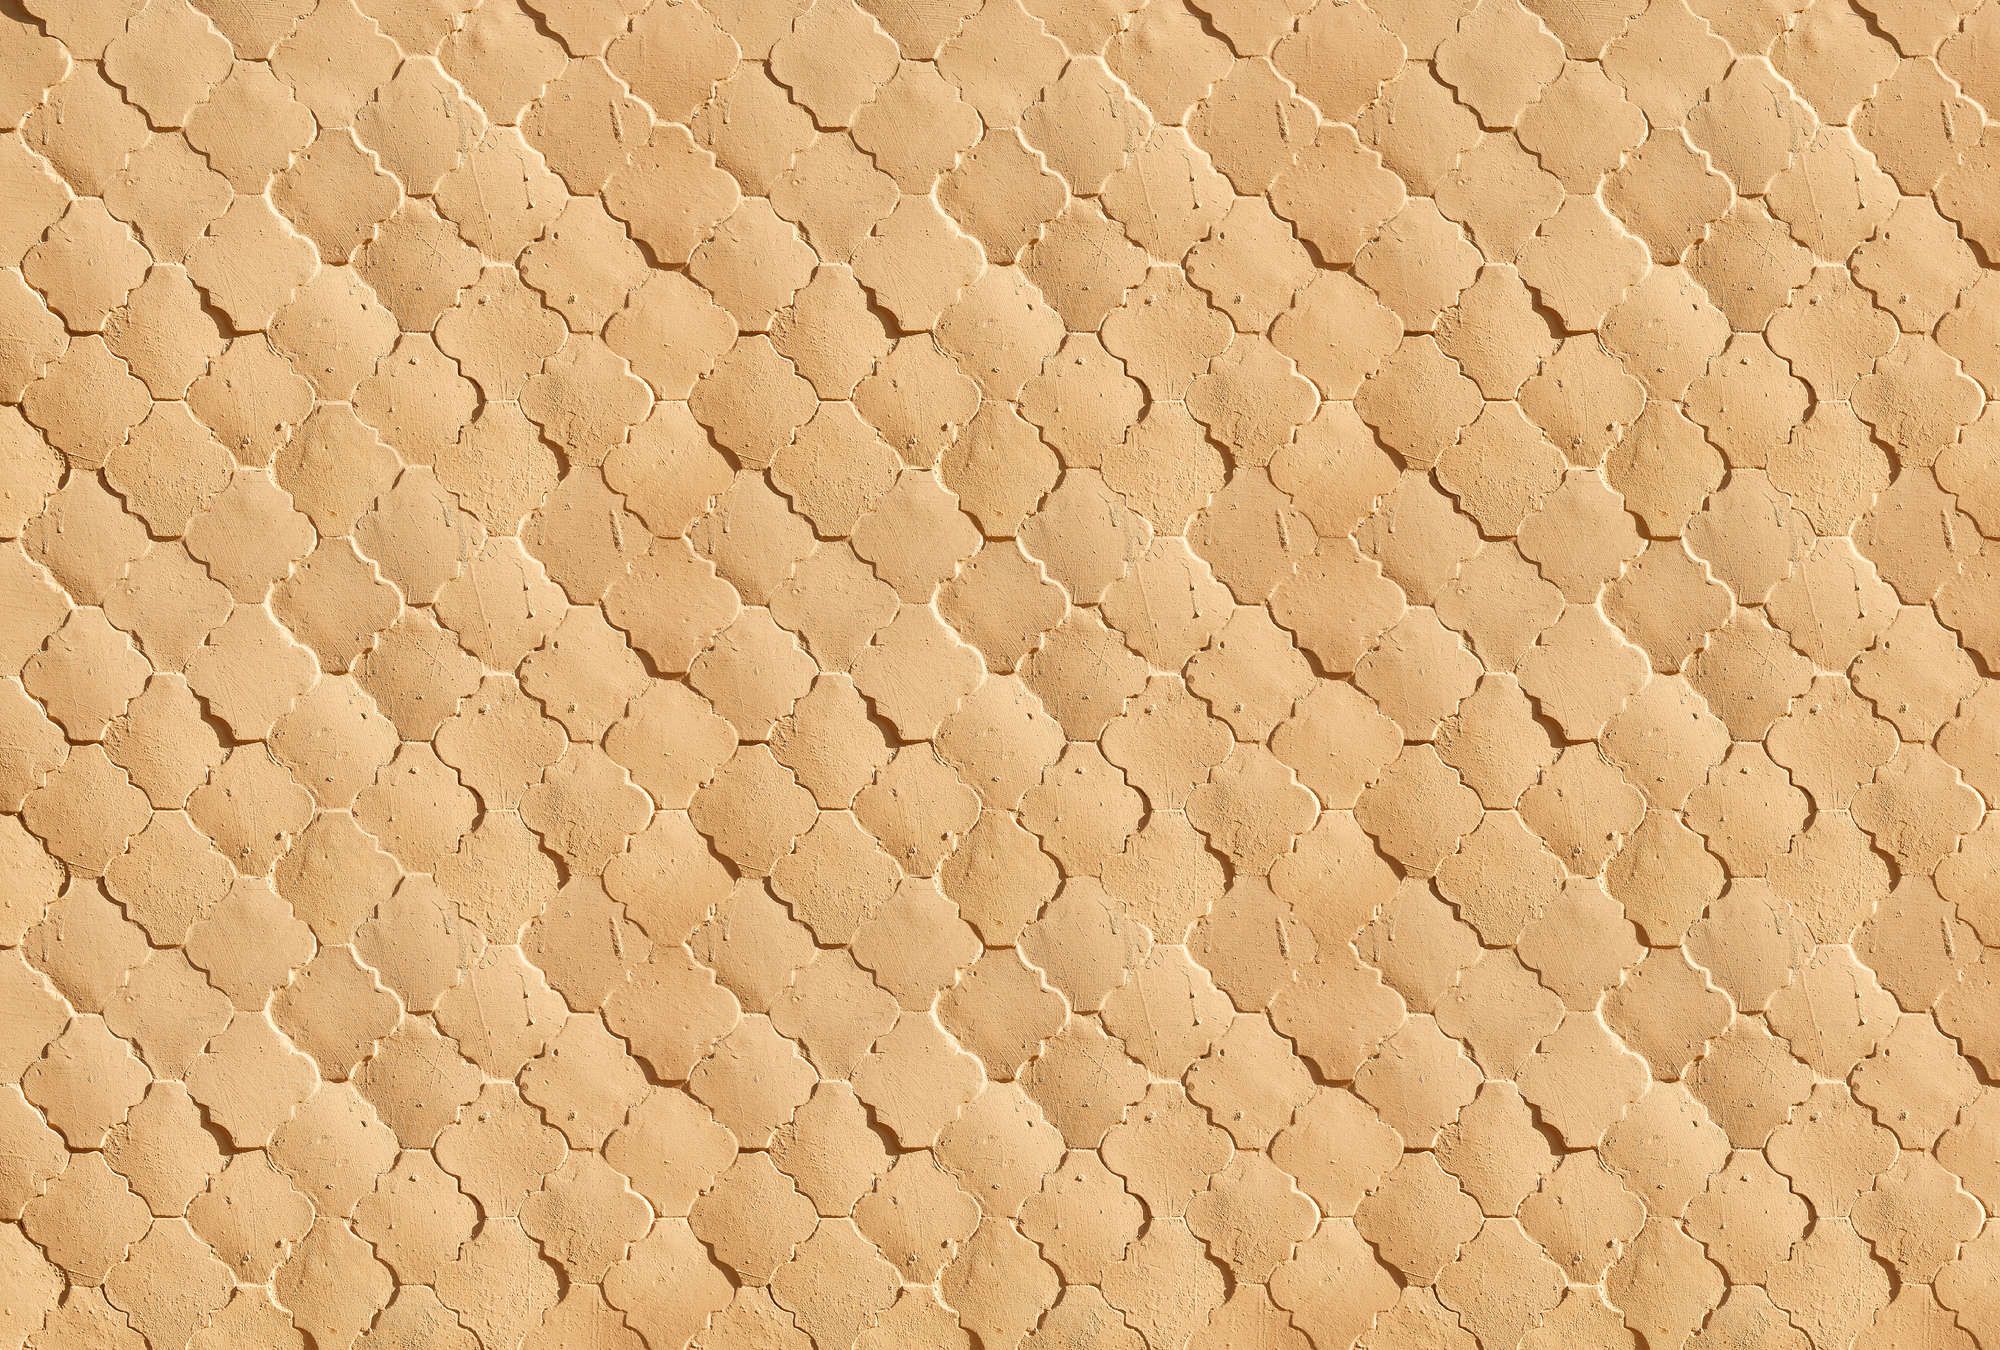             Fotomural »siena« - Diseño de azulejos mediterráneos en colores arena - Material no tejido de textura ligera
        